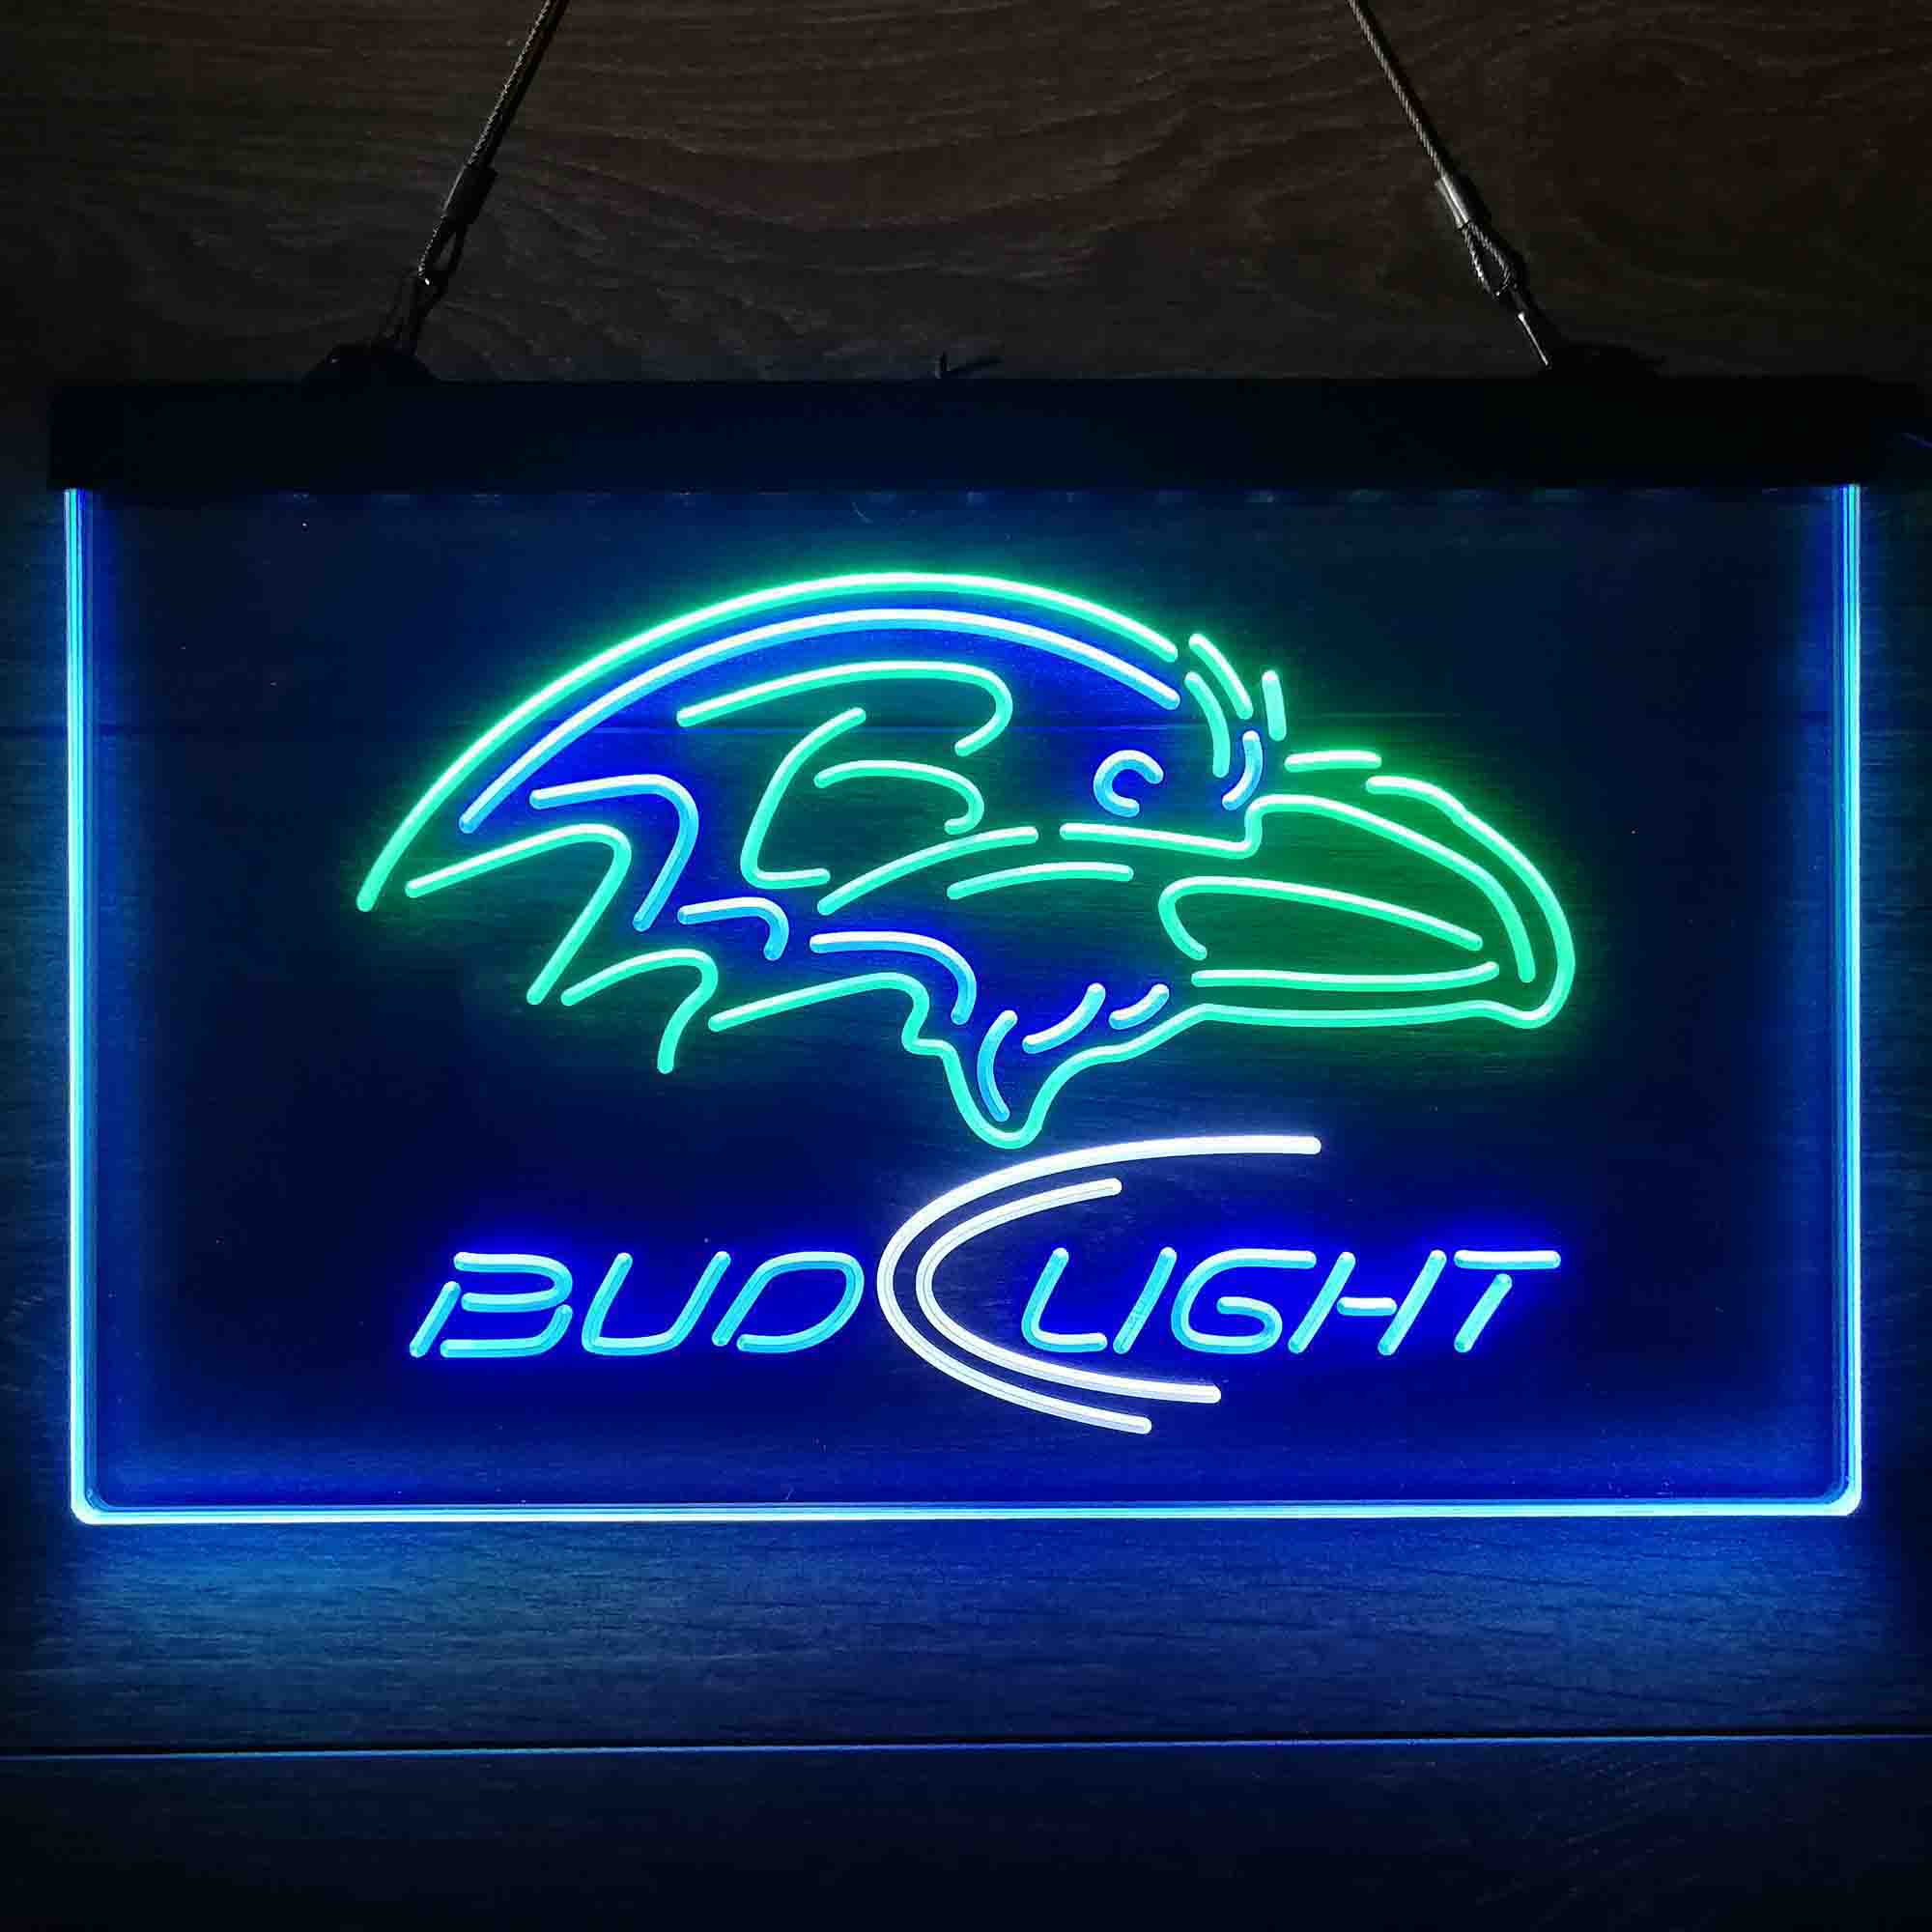 Baltimore Ravens Bud Light  Neon-Like LED Sign